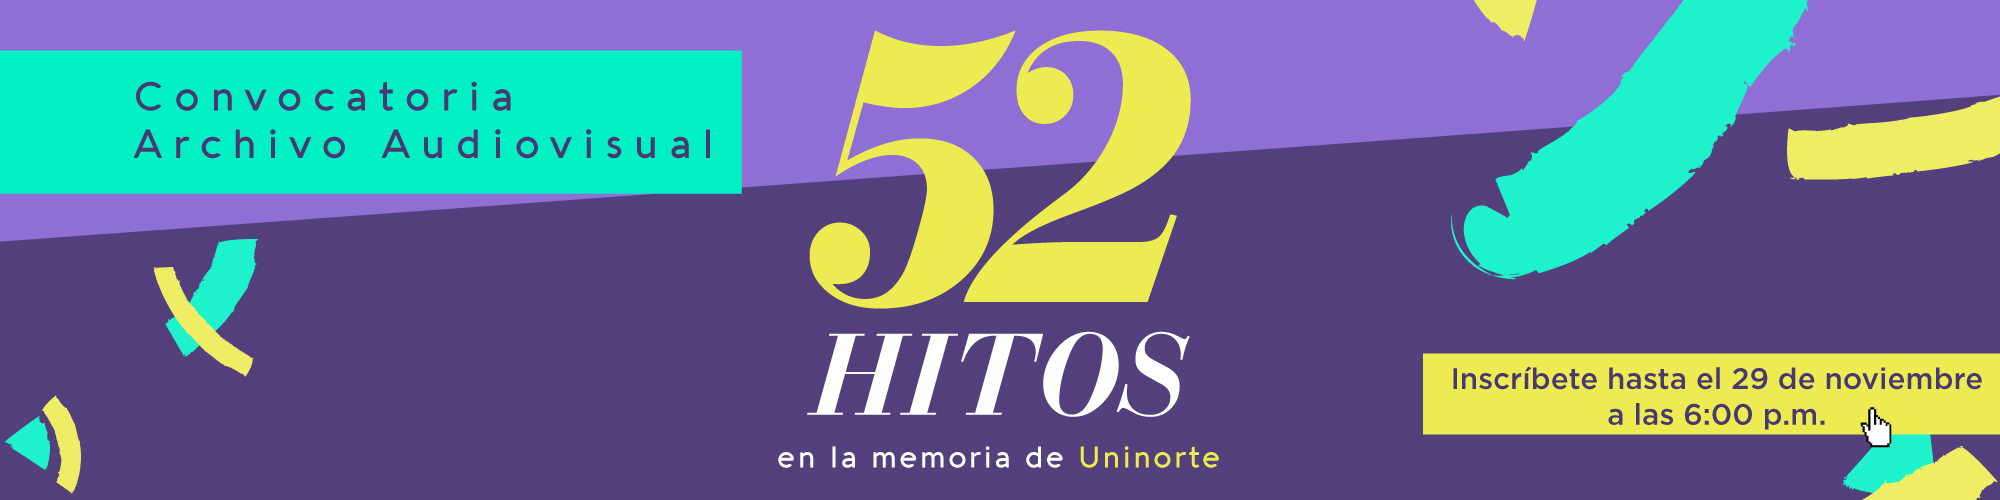 Convocatoria archivo audiovisual 52 hitos en la memoria de Uninorte